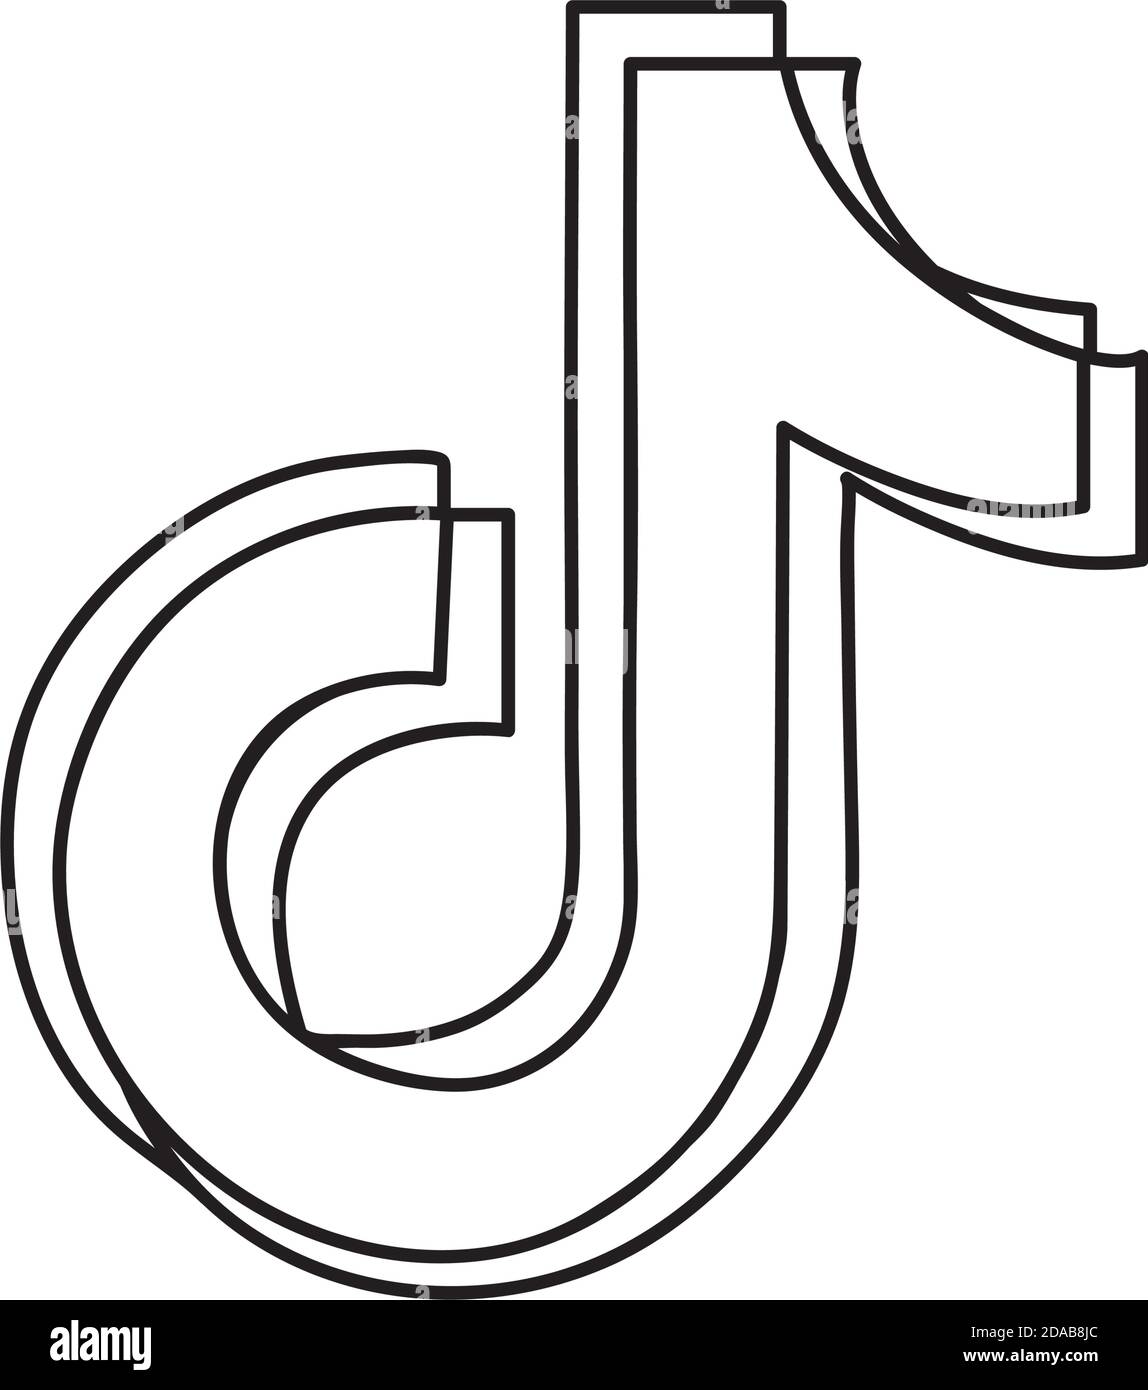 Imágenes Del Logo De Tik Tok Para Imprimir - julianonkes